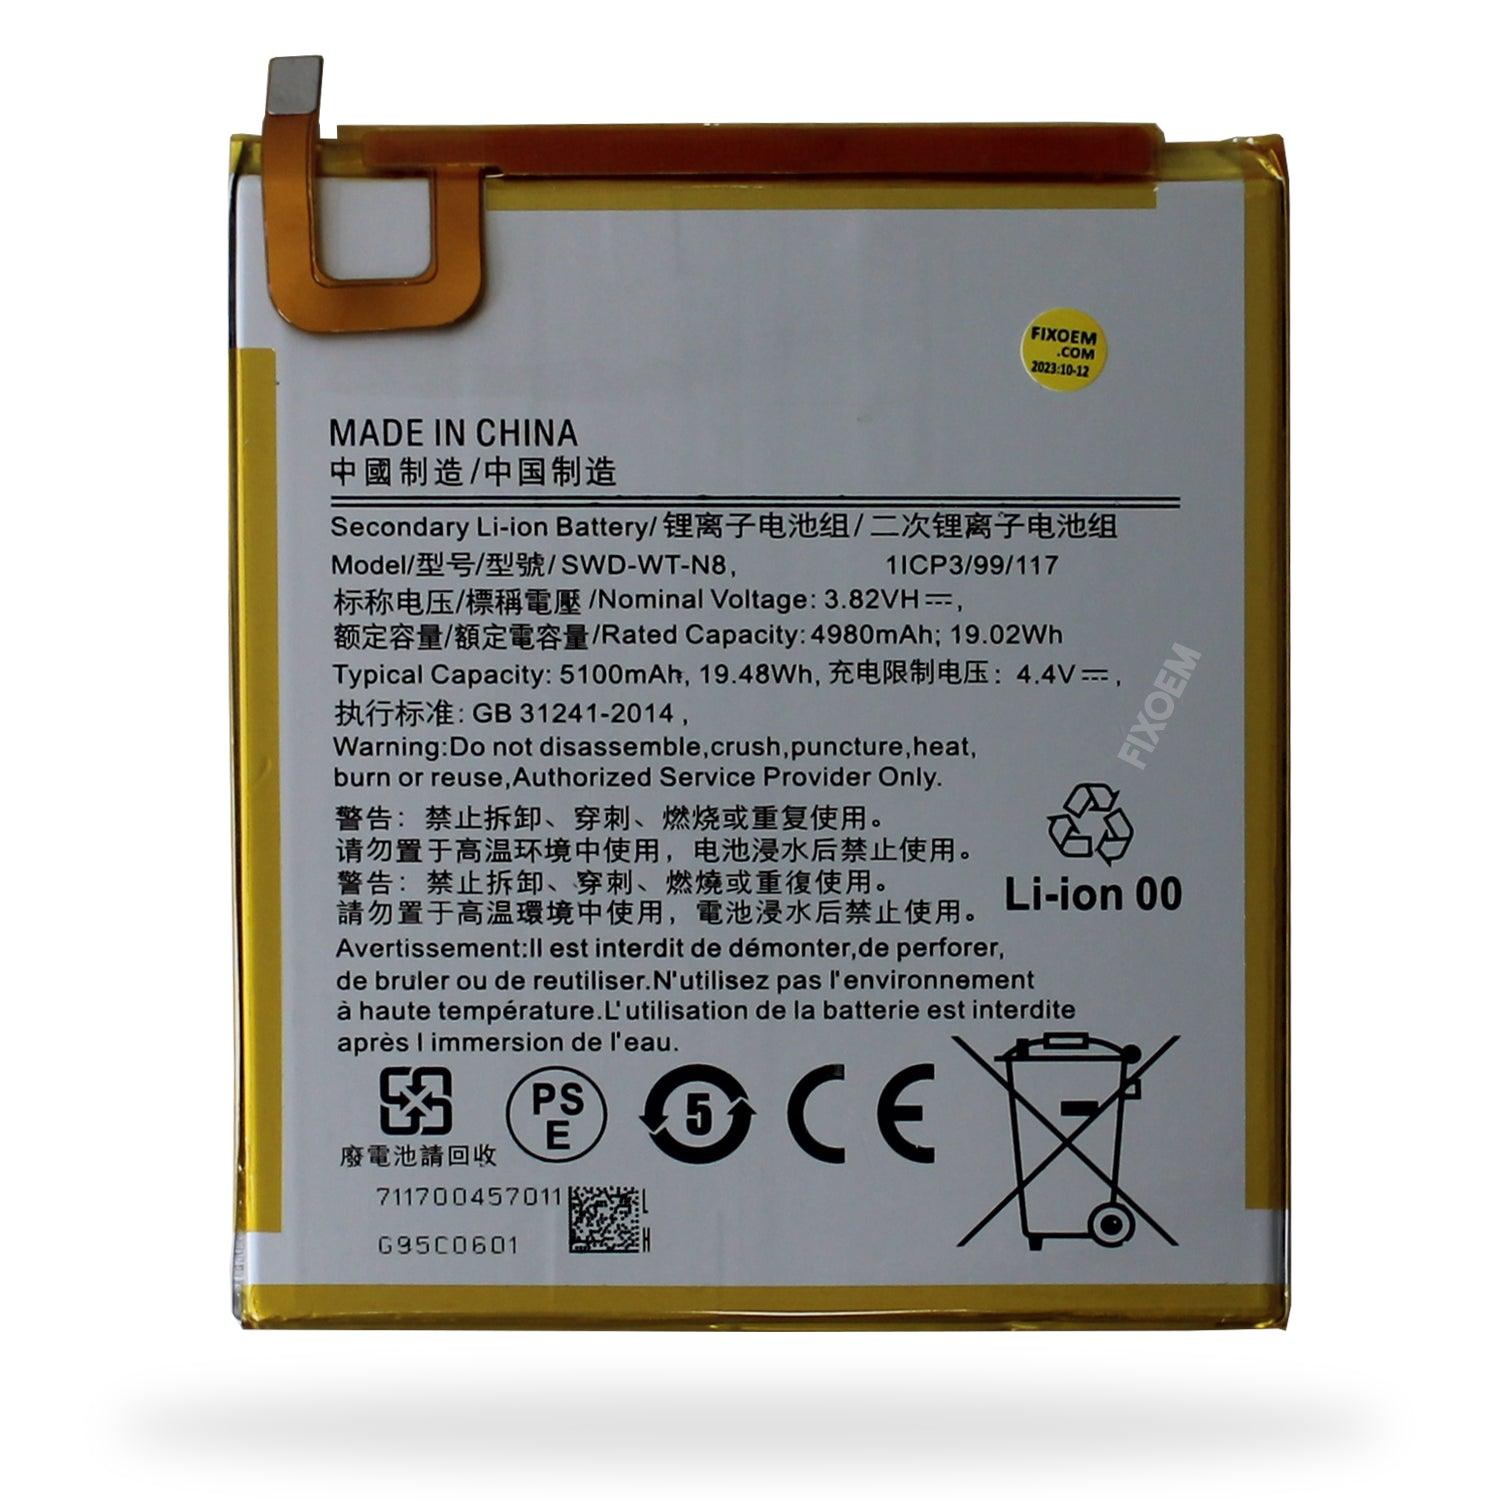 Bateria Samsung Tab A 8 Pulgadas Sm-T290 / Sm-T295 Swd-Wt-N8 a solo $ 170.00 Refaccion y puestos celulares, refurbish y microelectronica.- FixOEM